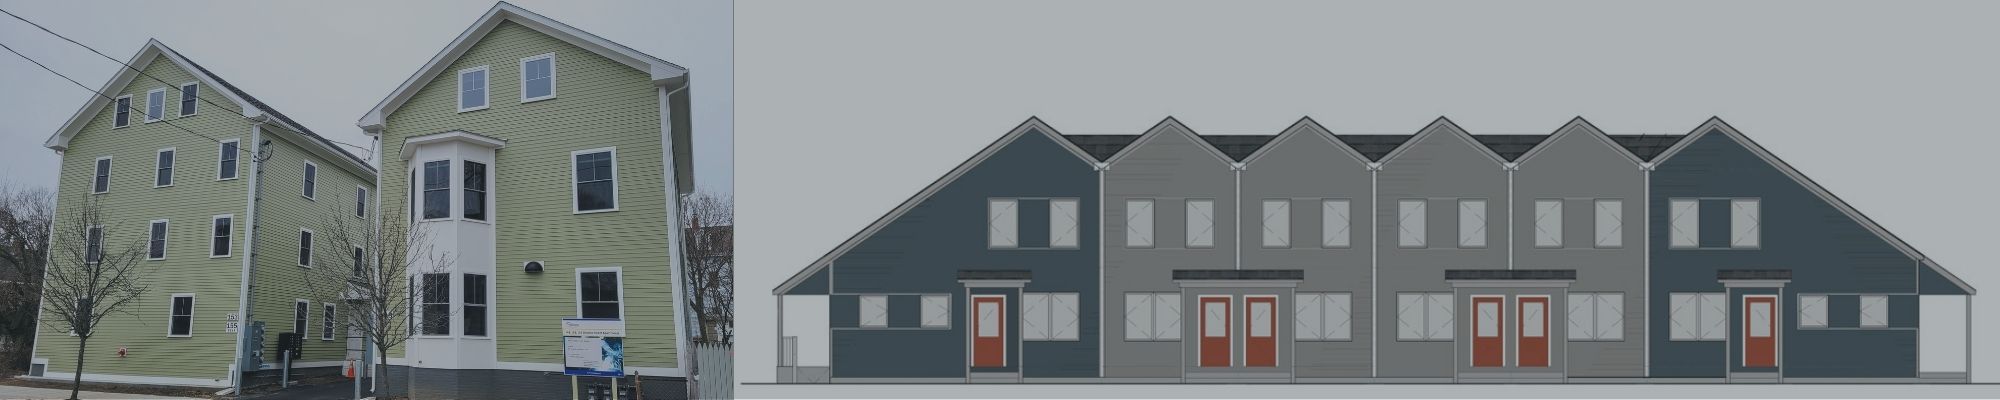 Telemundo Nueva Inglaterra: Anuncian construcción de viviendas asequibles en Providence